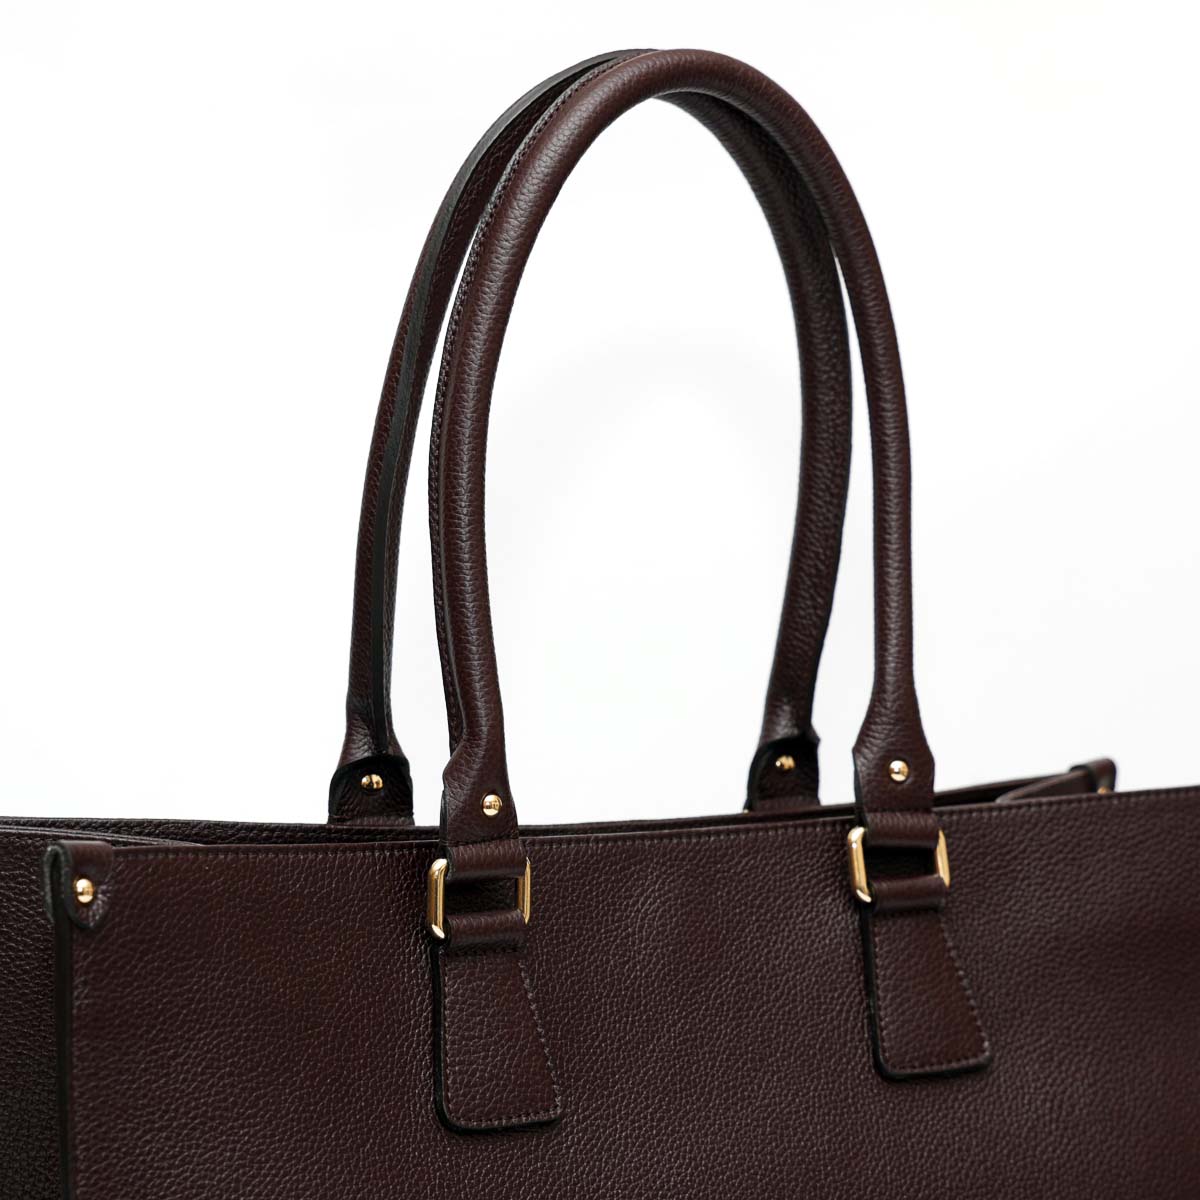 Lady bag borsa da donna a spalla in pelle marrone scuro con doppi manici più tracolla fatta da Pianigiani Bags